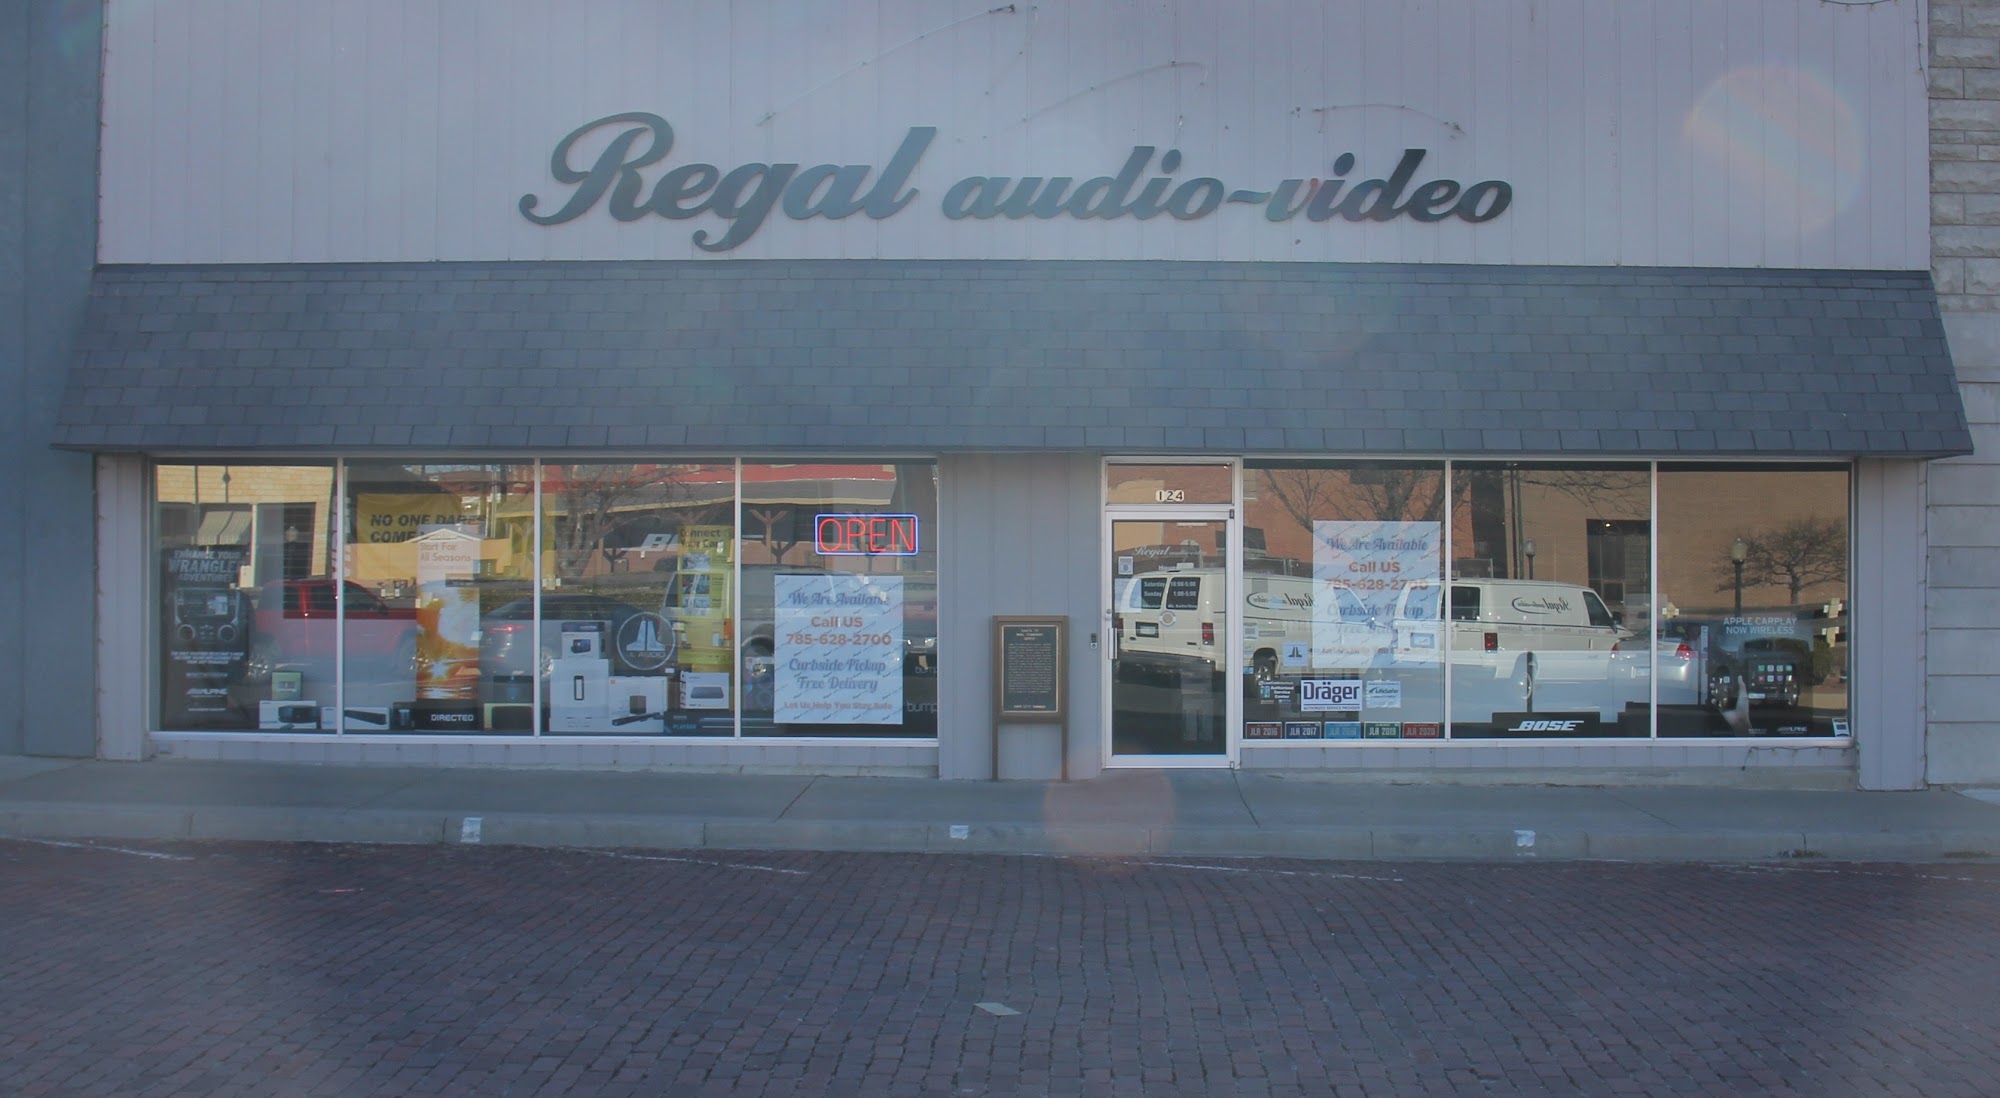 Regal Audio Video